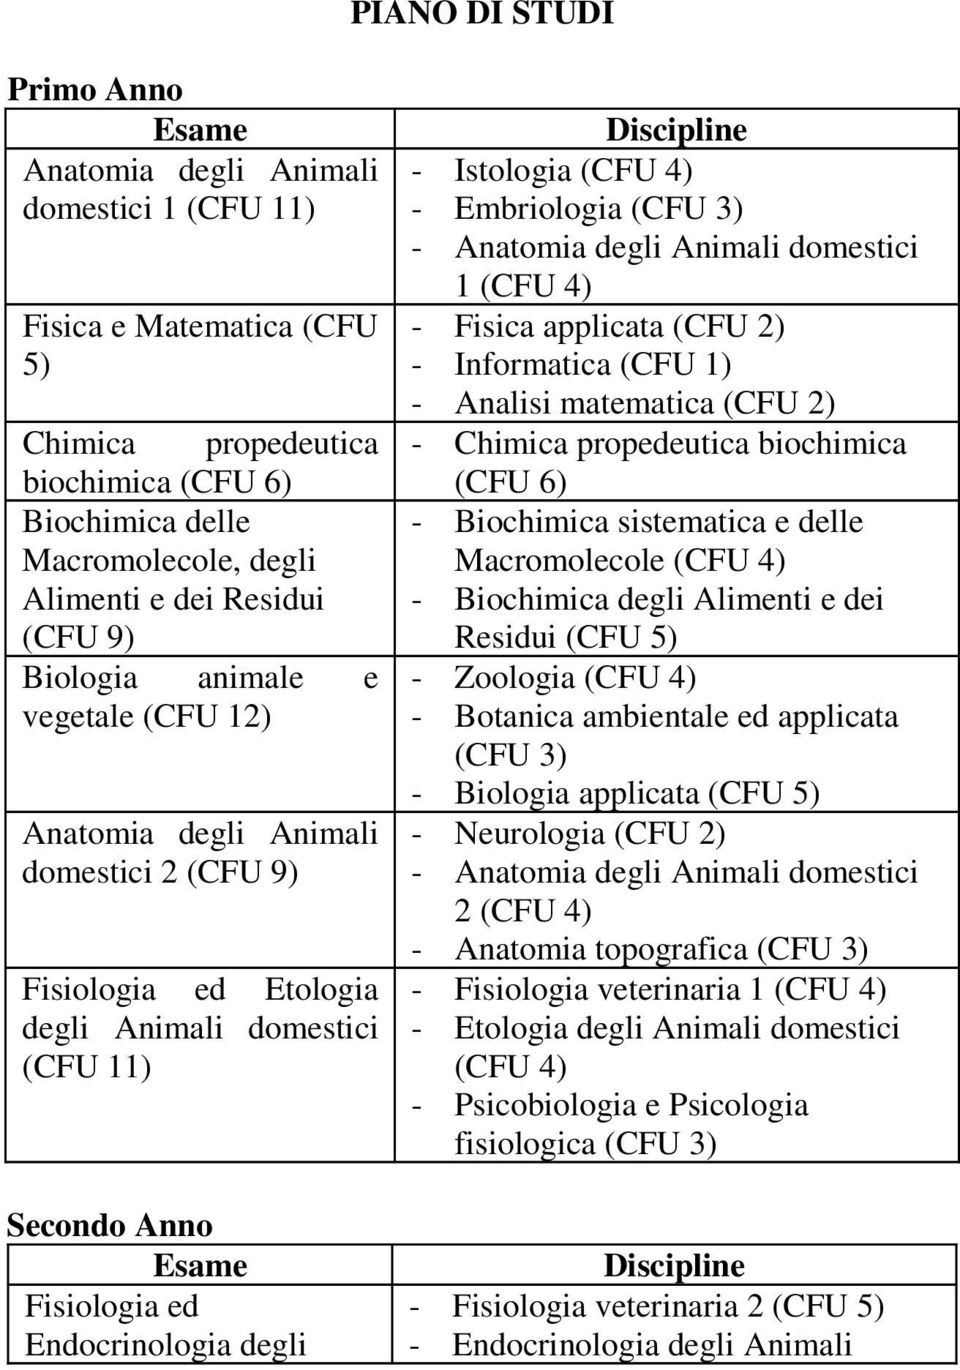 Istologia - Embriologia - Anatomia degli Animali domestici 1 - Fisica applicata - Informatica (CFU 1) - Analisi matematica - Chimica propedeutica biochimica (CFU 6) - Biochimica sistematica e delle